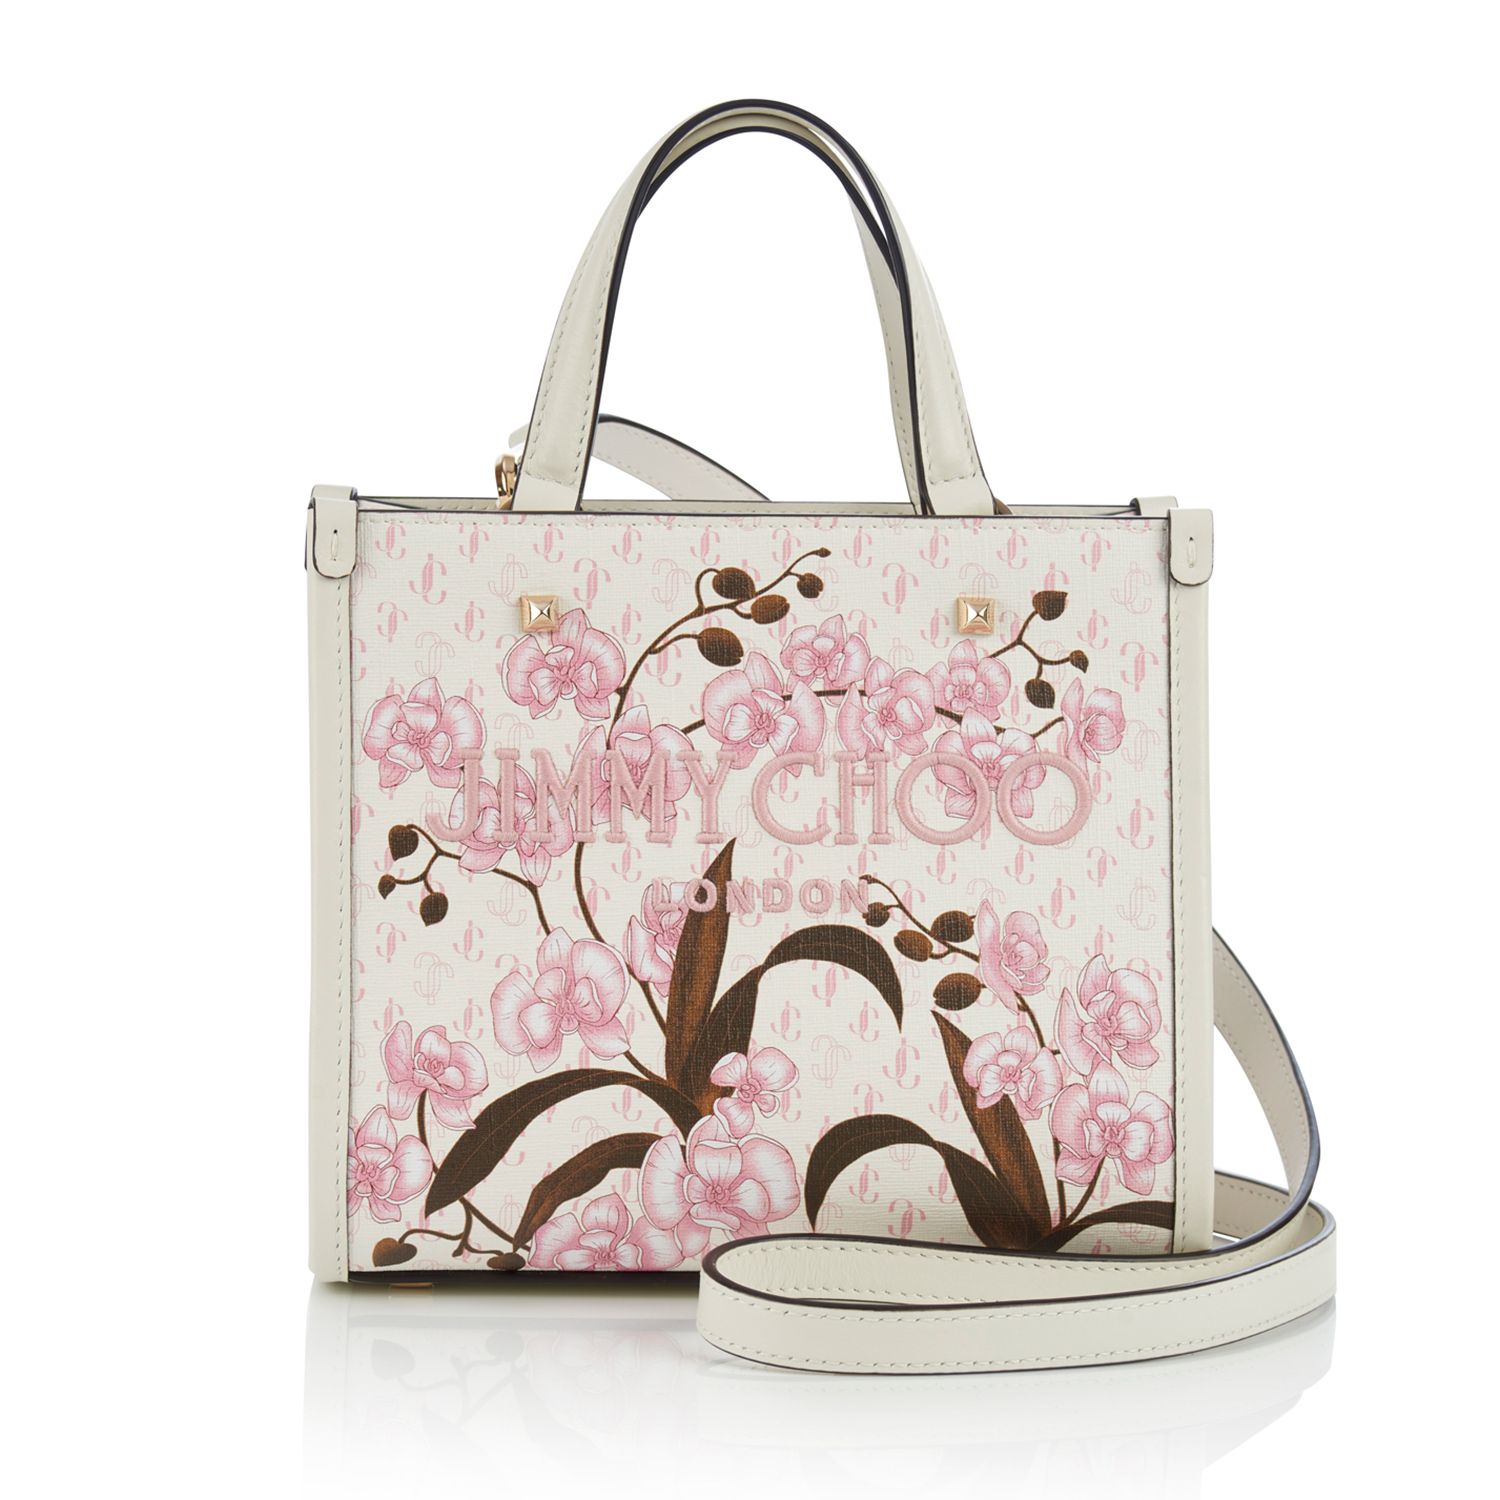 ジミー チュウ」より春を呼ぶ日本限定のバッグとウォレットが発売 